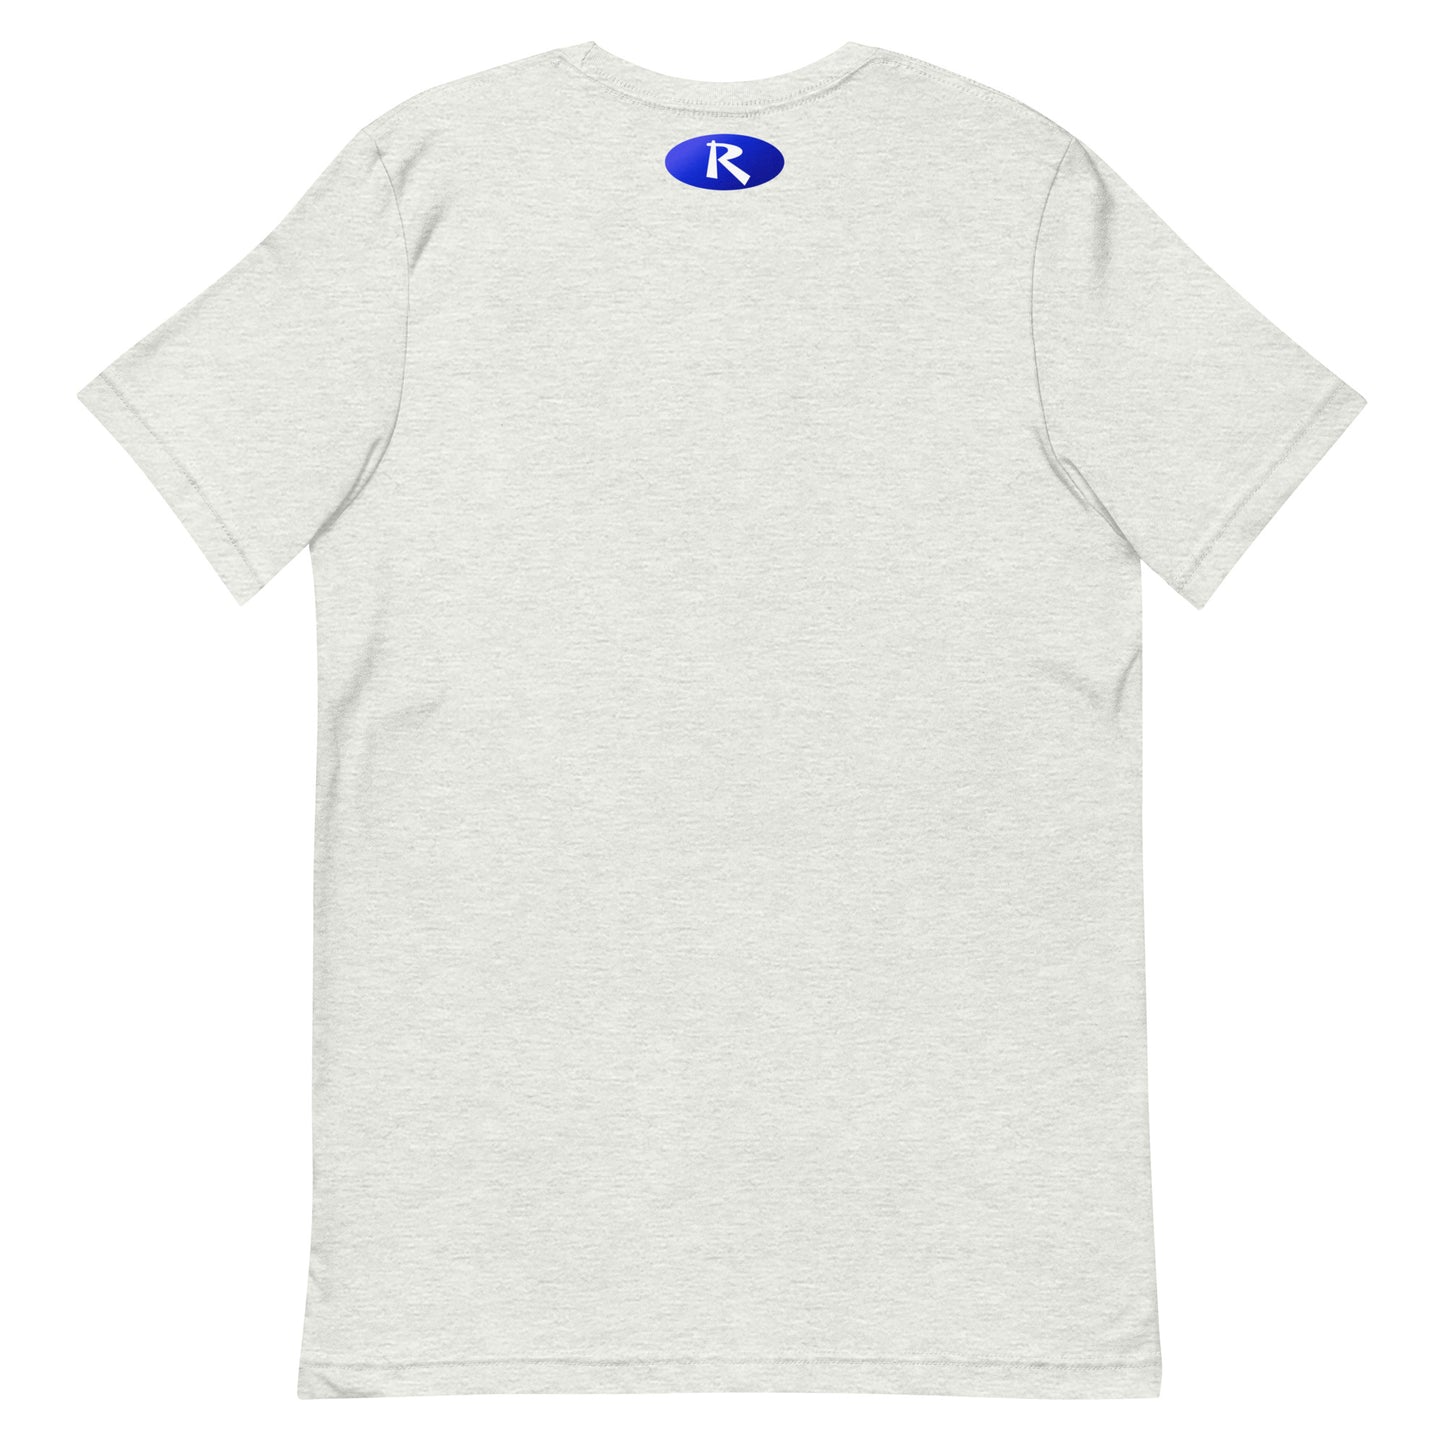 Be Kind ReMar Nurse T-Shirt (Unisex Fit)